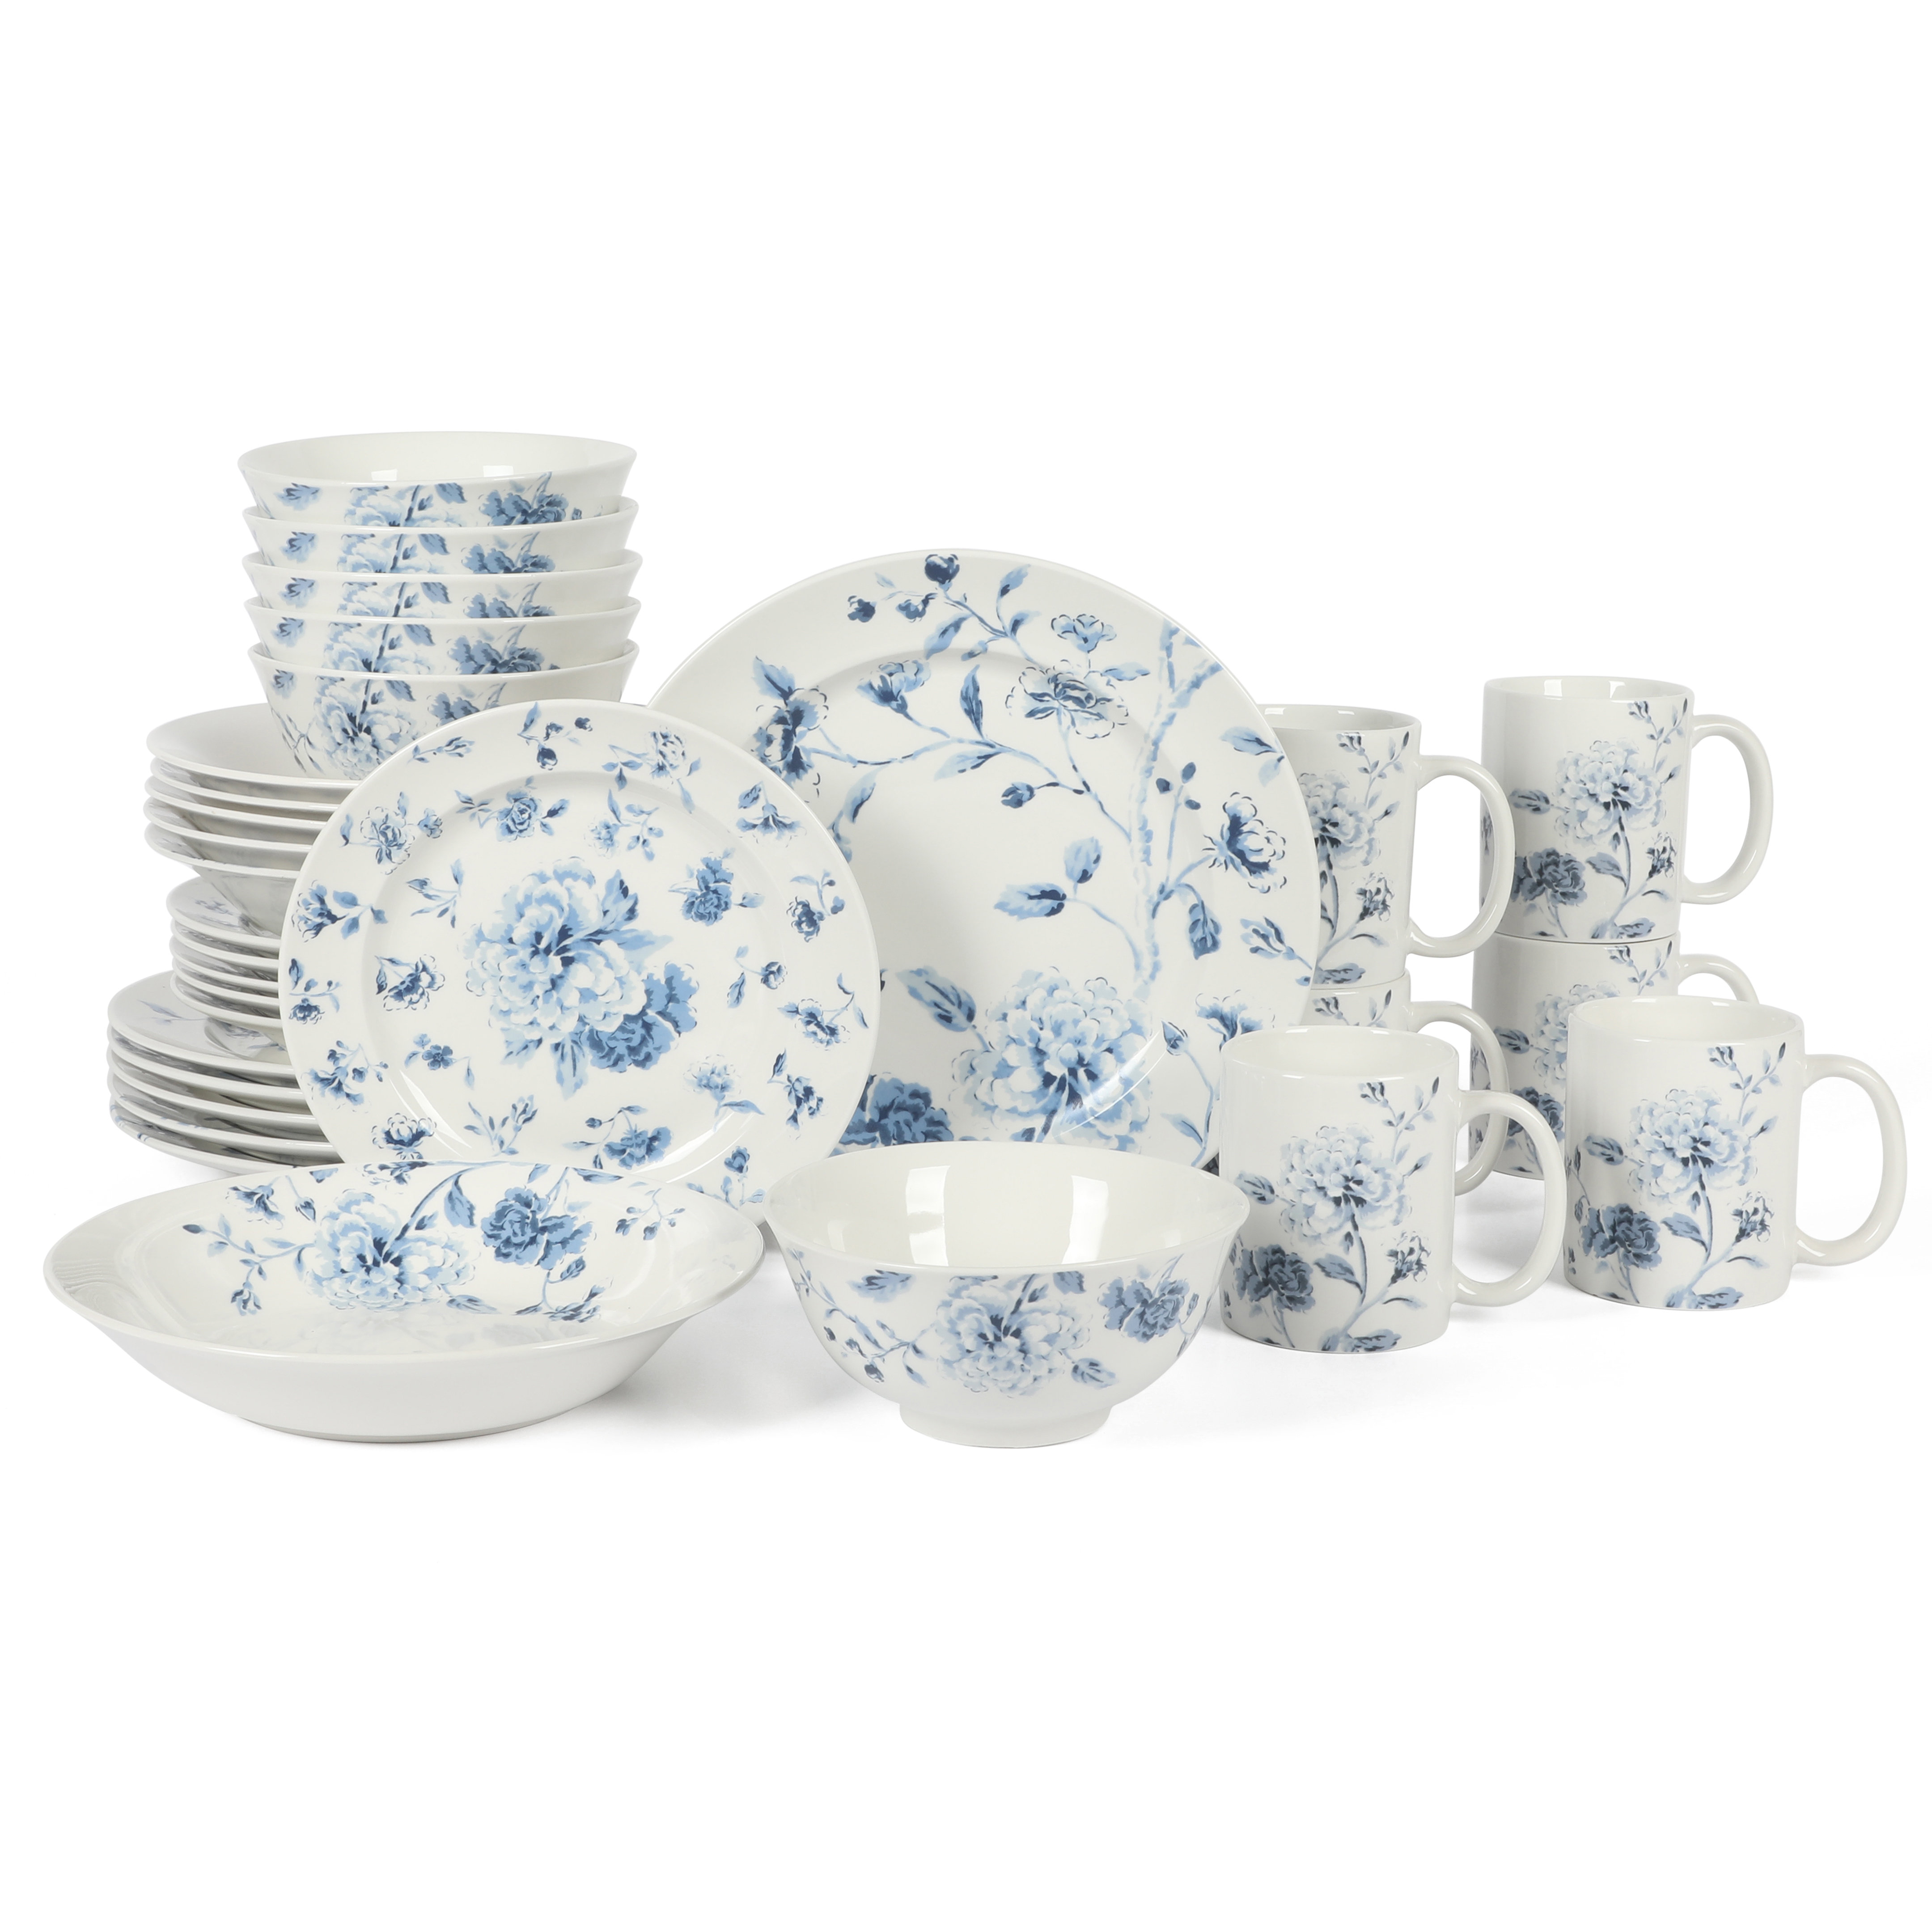 https://assets.wfcdn.com/im/35466539/compr-r85/2512/251299373/martha-stewart-empress-bouquet-30-piece-decorated-porcelain-dinnerware-plates-and-bowls-set.jpg